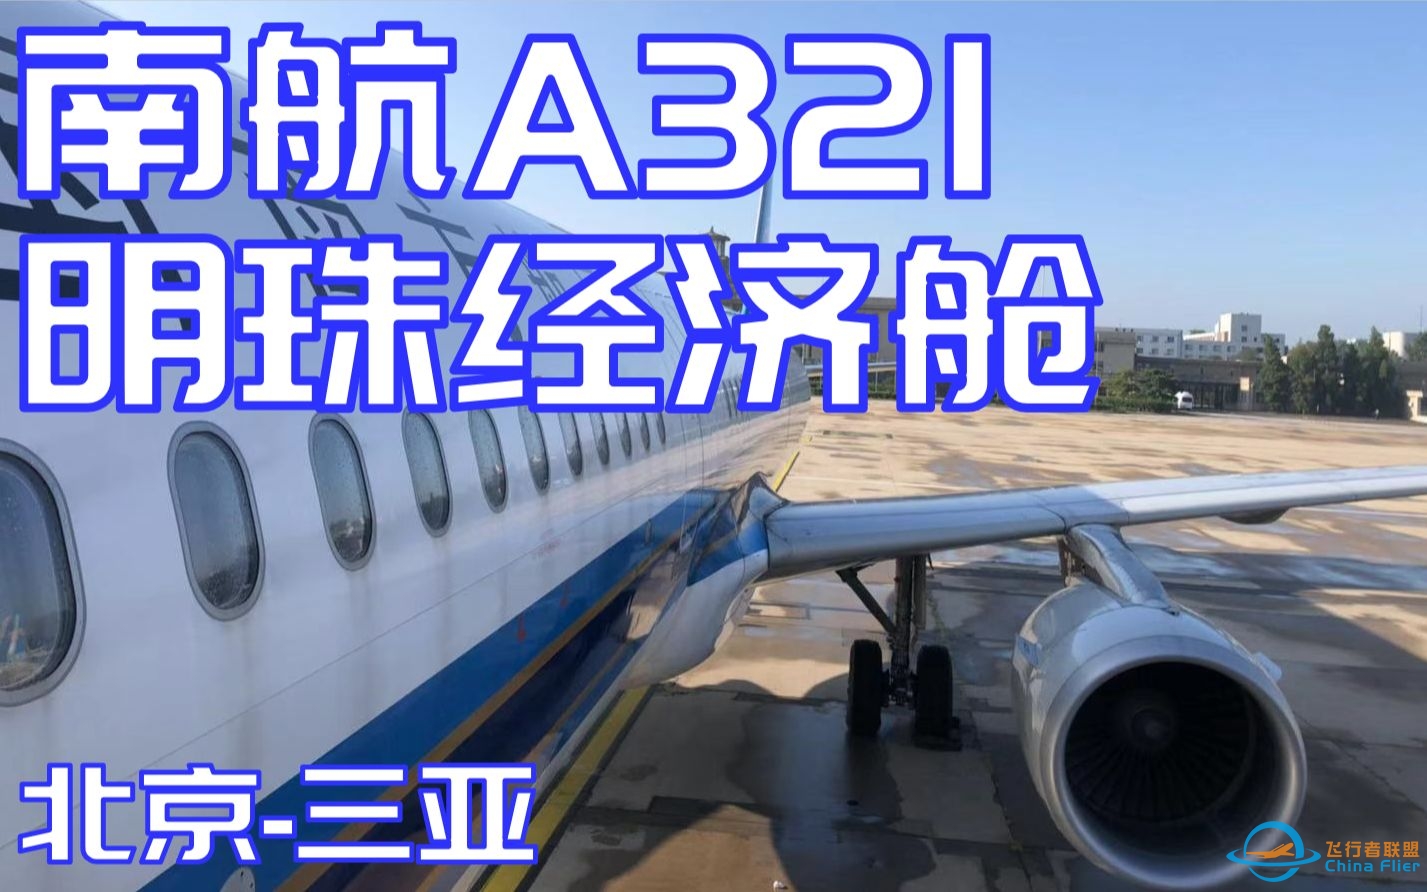 【飞行体验】中国南方航空A321明珠经济舱北京-三亚体验-4459 